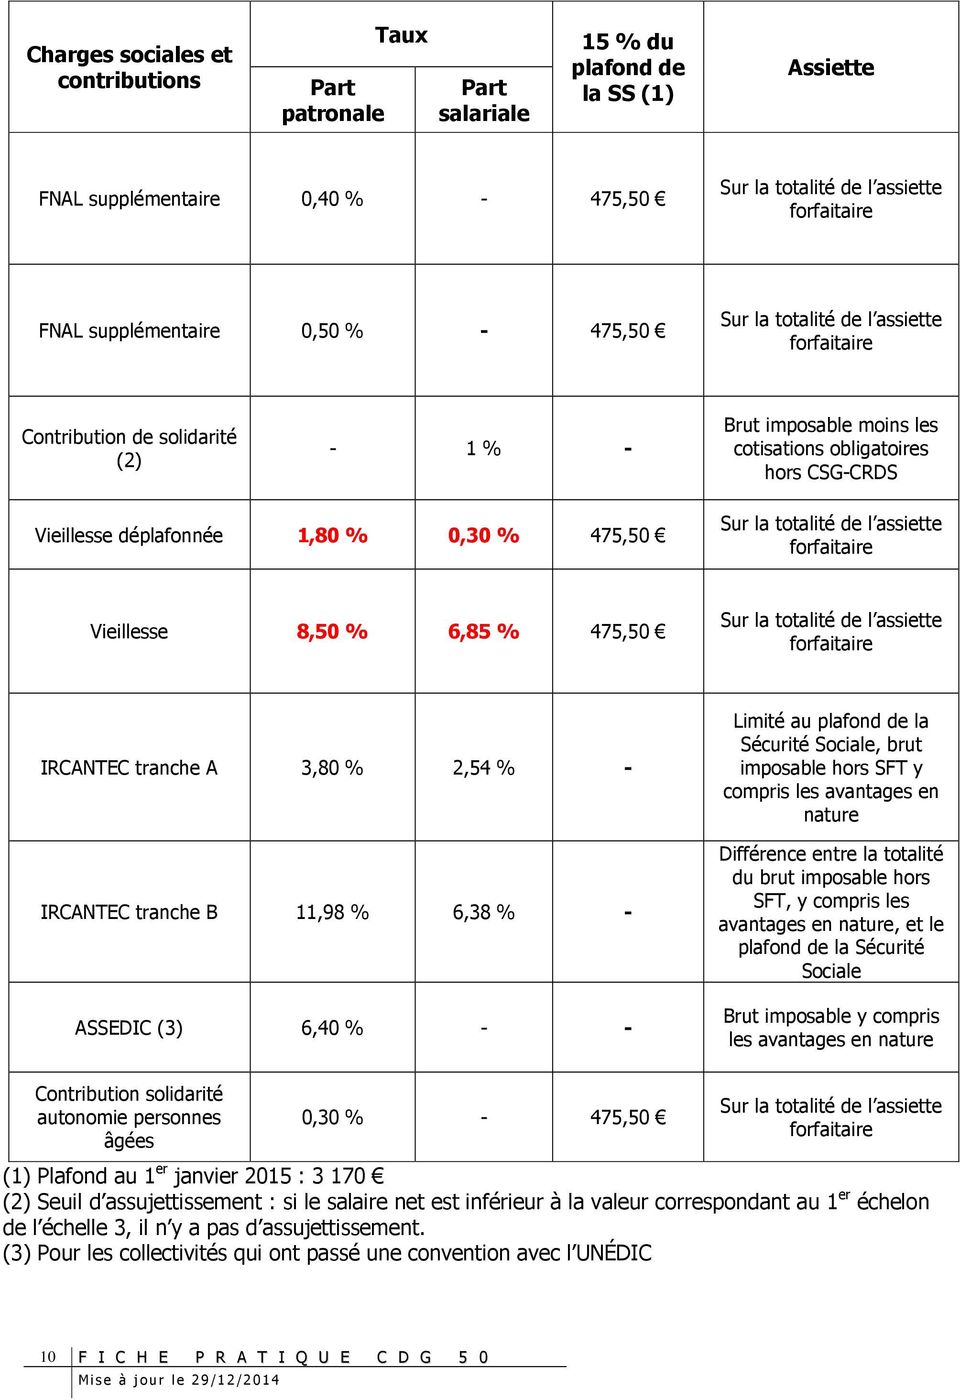 IRCANTEC tranche B 11,98 % 6,38 % - ASSEDIC (3) 6,40 % - - Limité au plafond de la Sécurité Sociale, brut imposable hors SFT y compris les avantages en nature Différence entre la totalité du brut